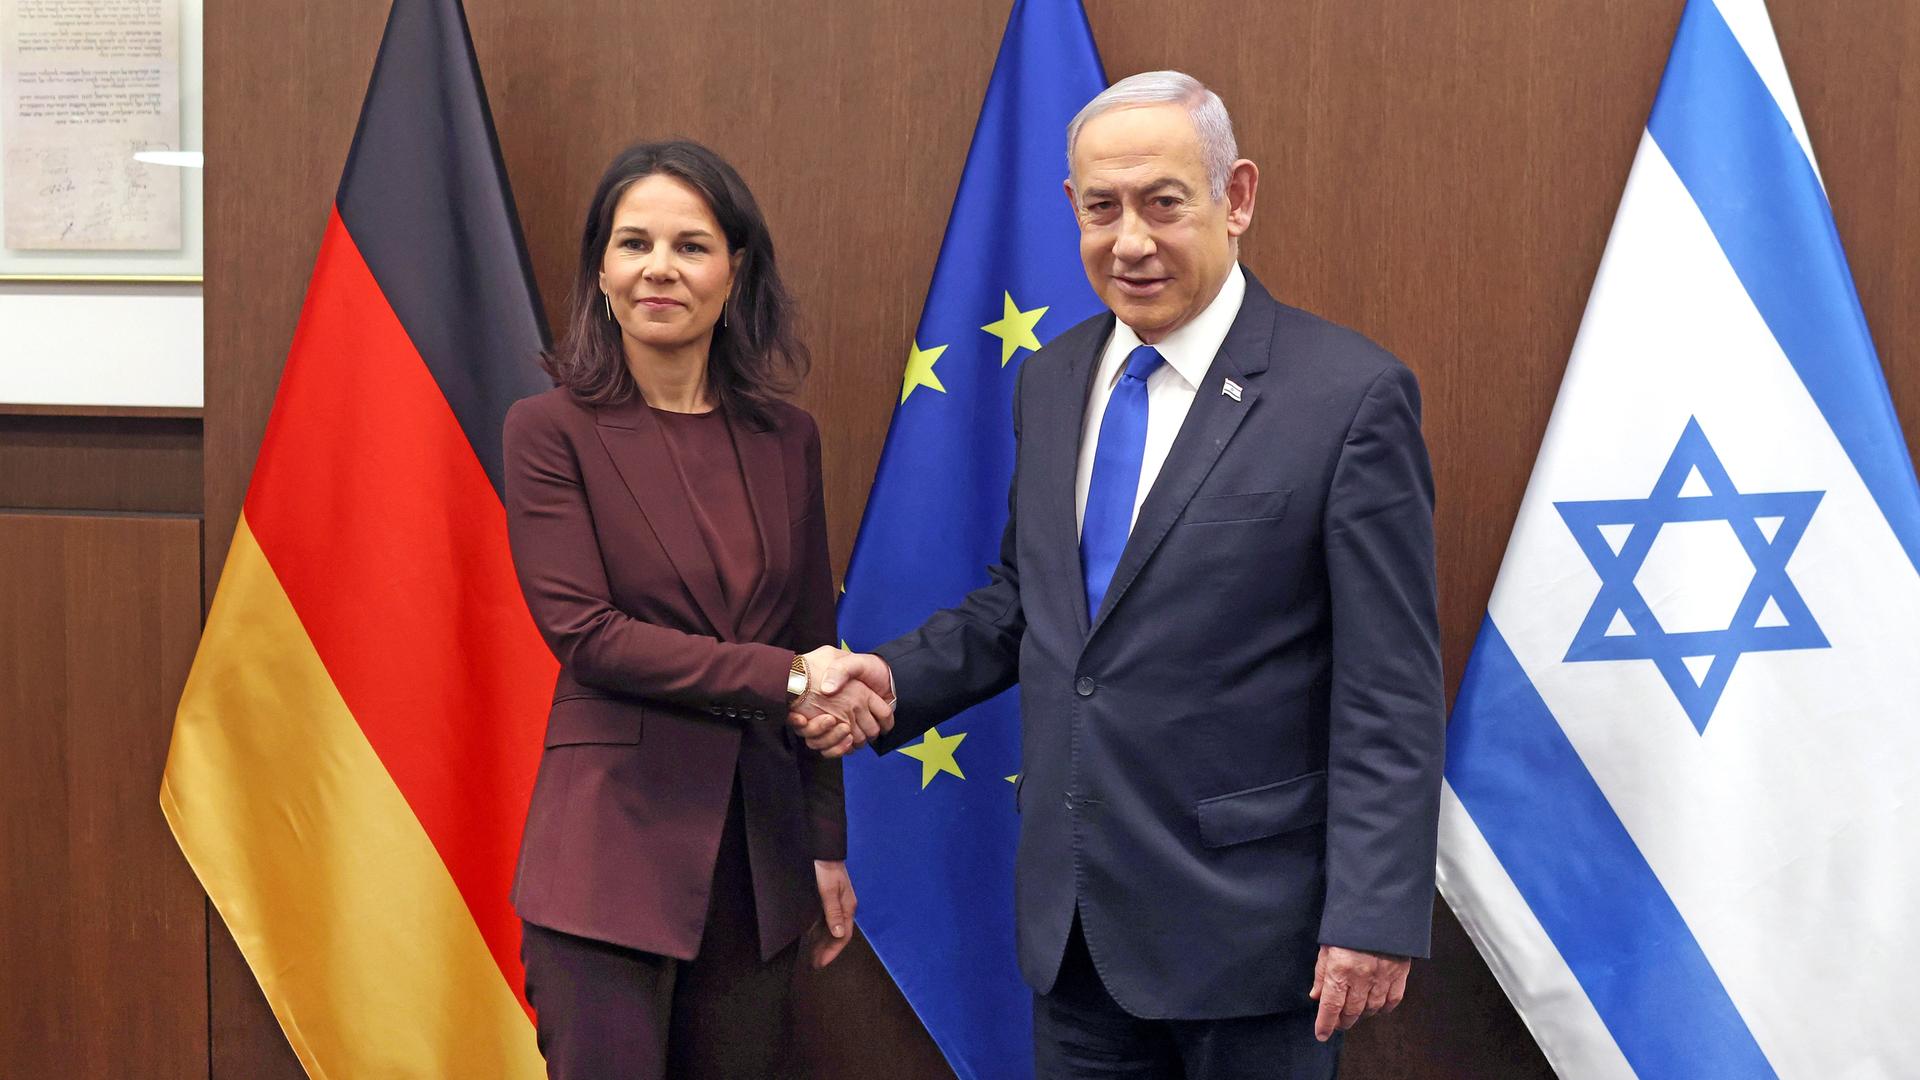 Israels Premierminister Benjamin Netanjahu begrüßt die deutsche Außenministerin Annalena Baerbock. Sie stehen vor Flaggen der EU, Deutschlands und Israel.